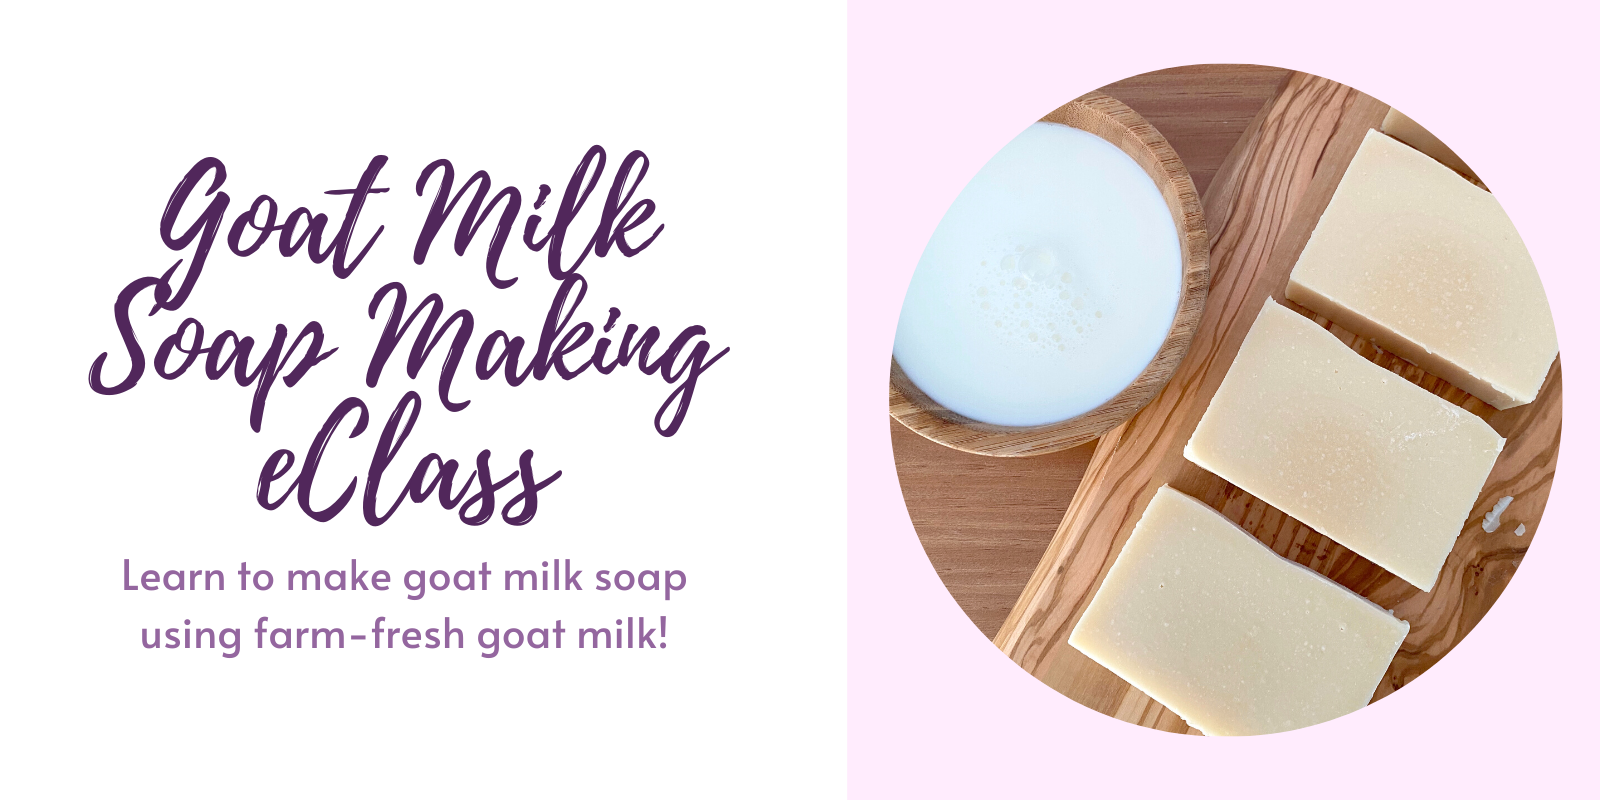 Goat Milk Soapmaking Class Kit